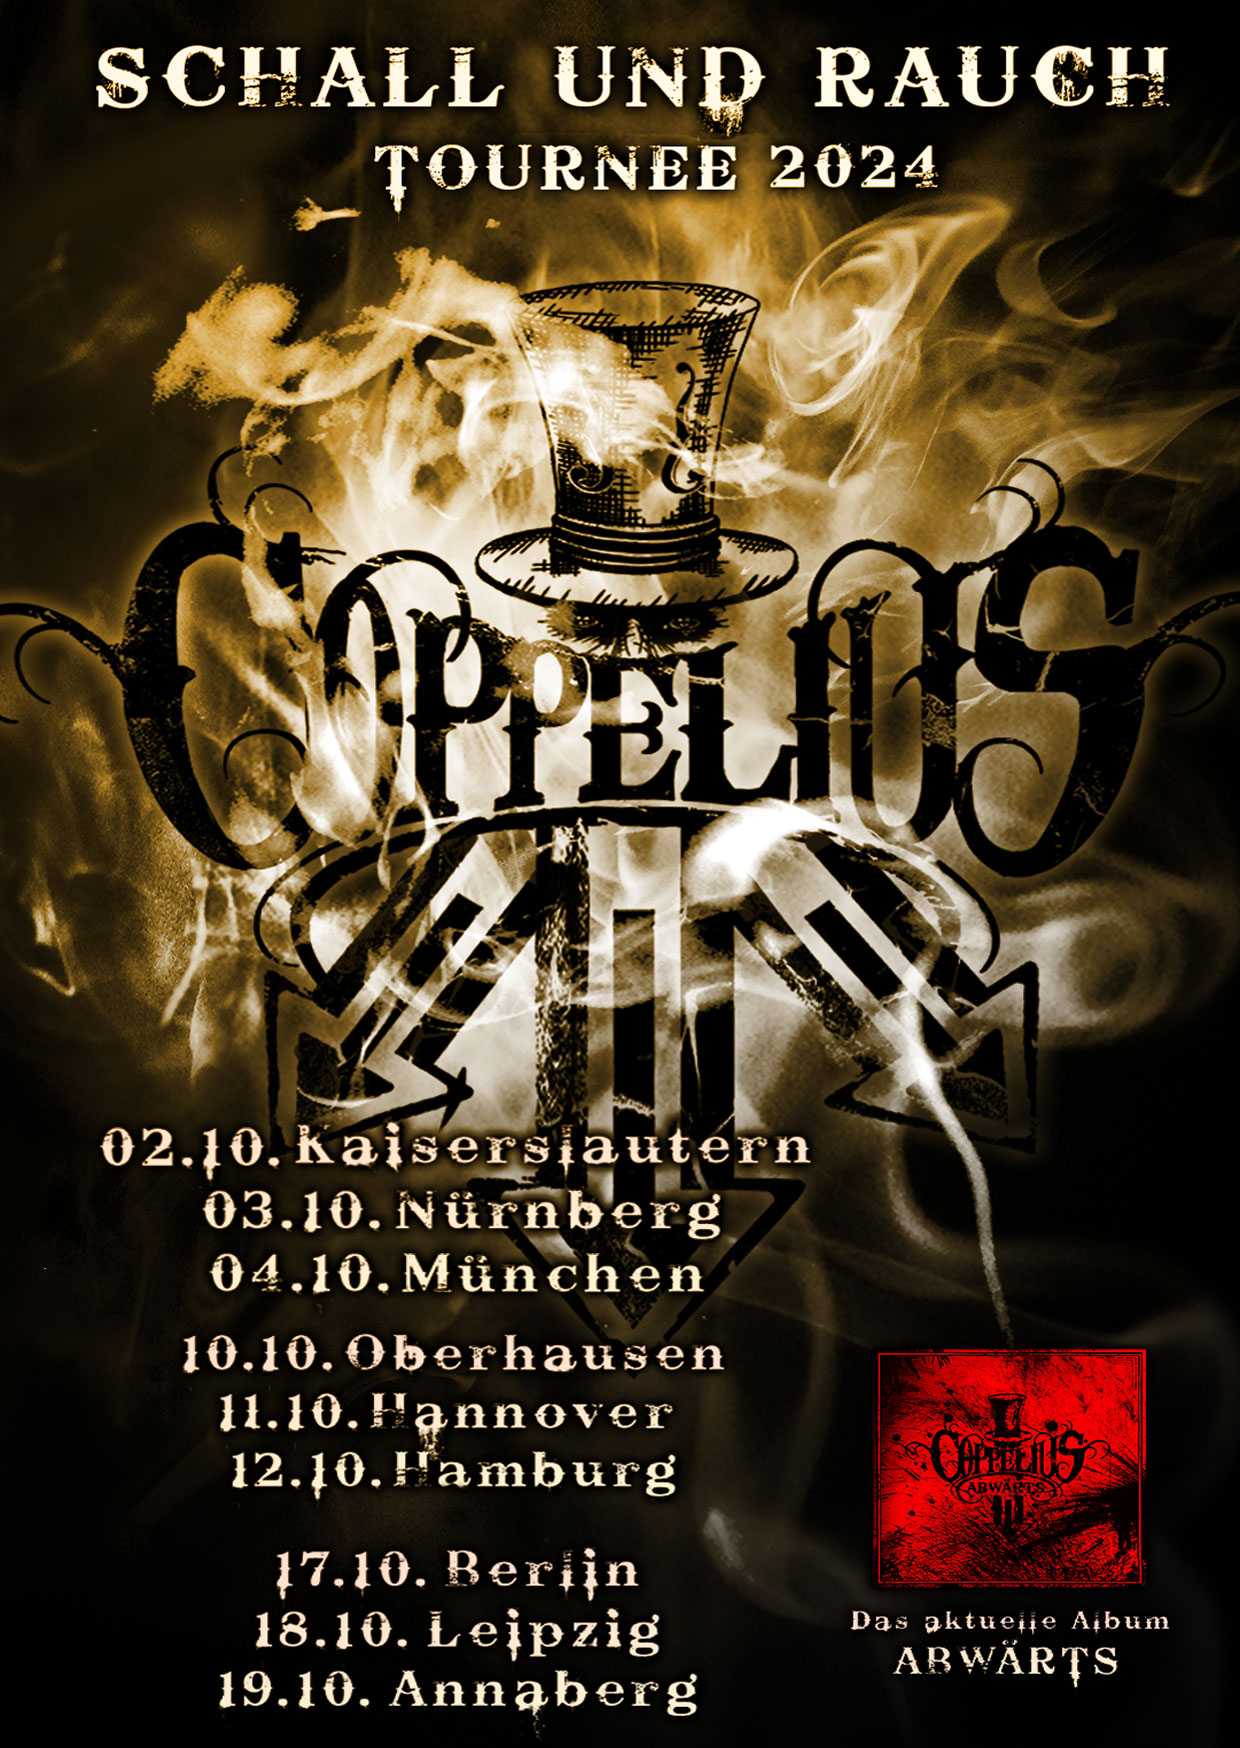 Coppelius - Schall Rauch Tournee 2024 en MusikZentrum Hannover Tickets